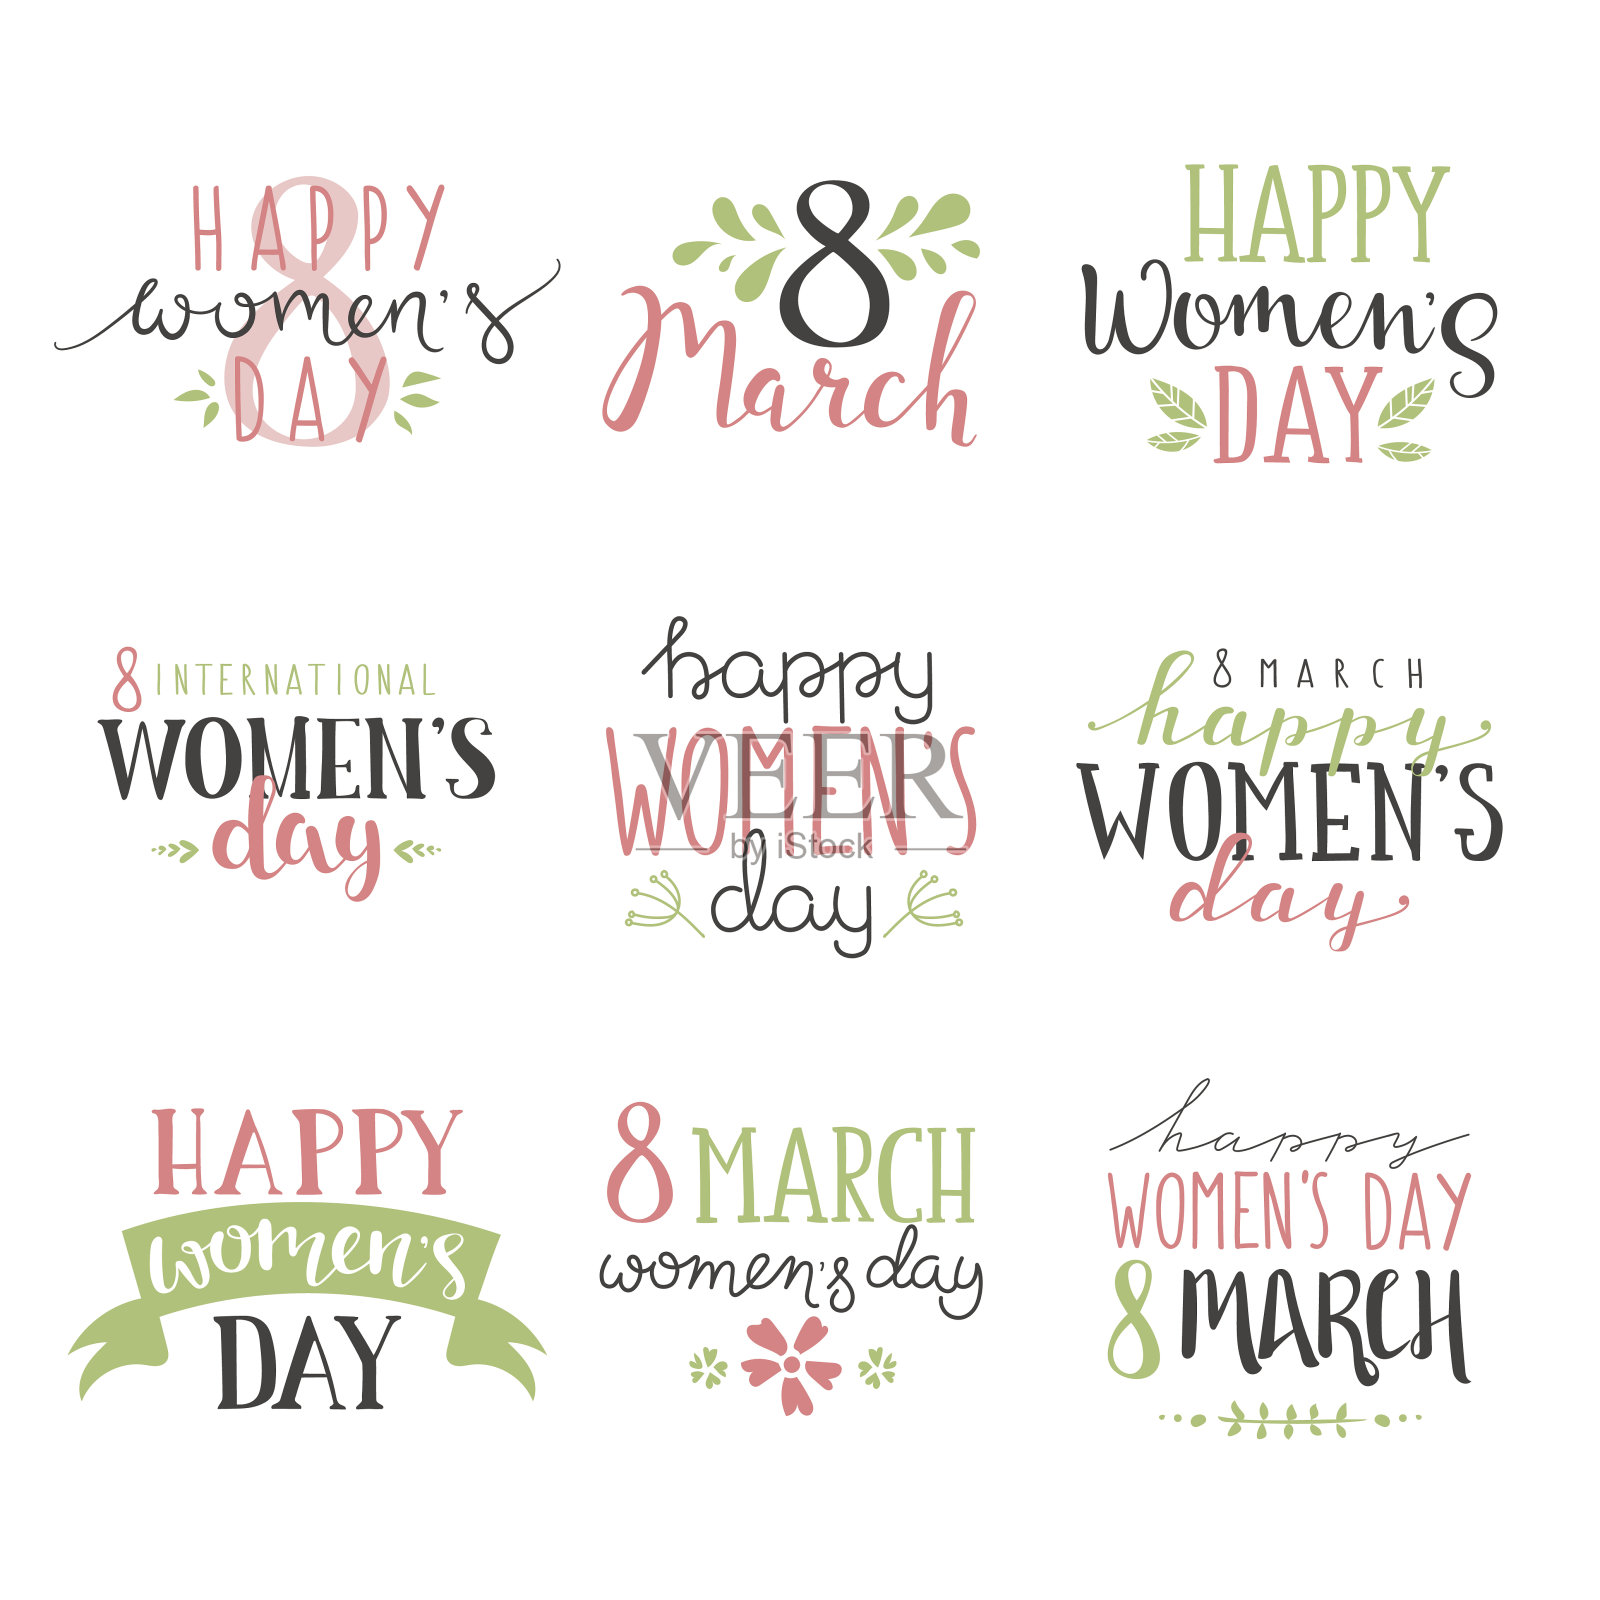 国际妇女节短信3月8日为庆祝贺卡设计元素图片